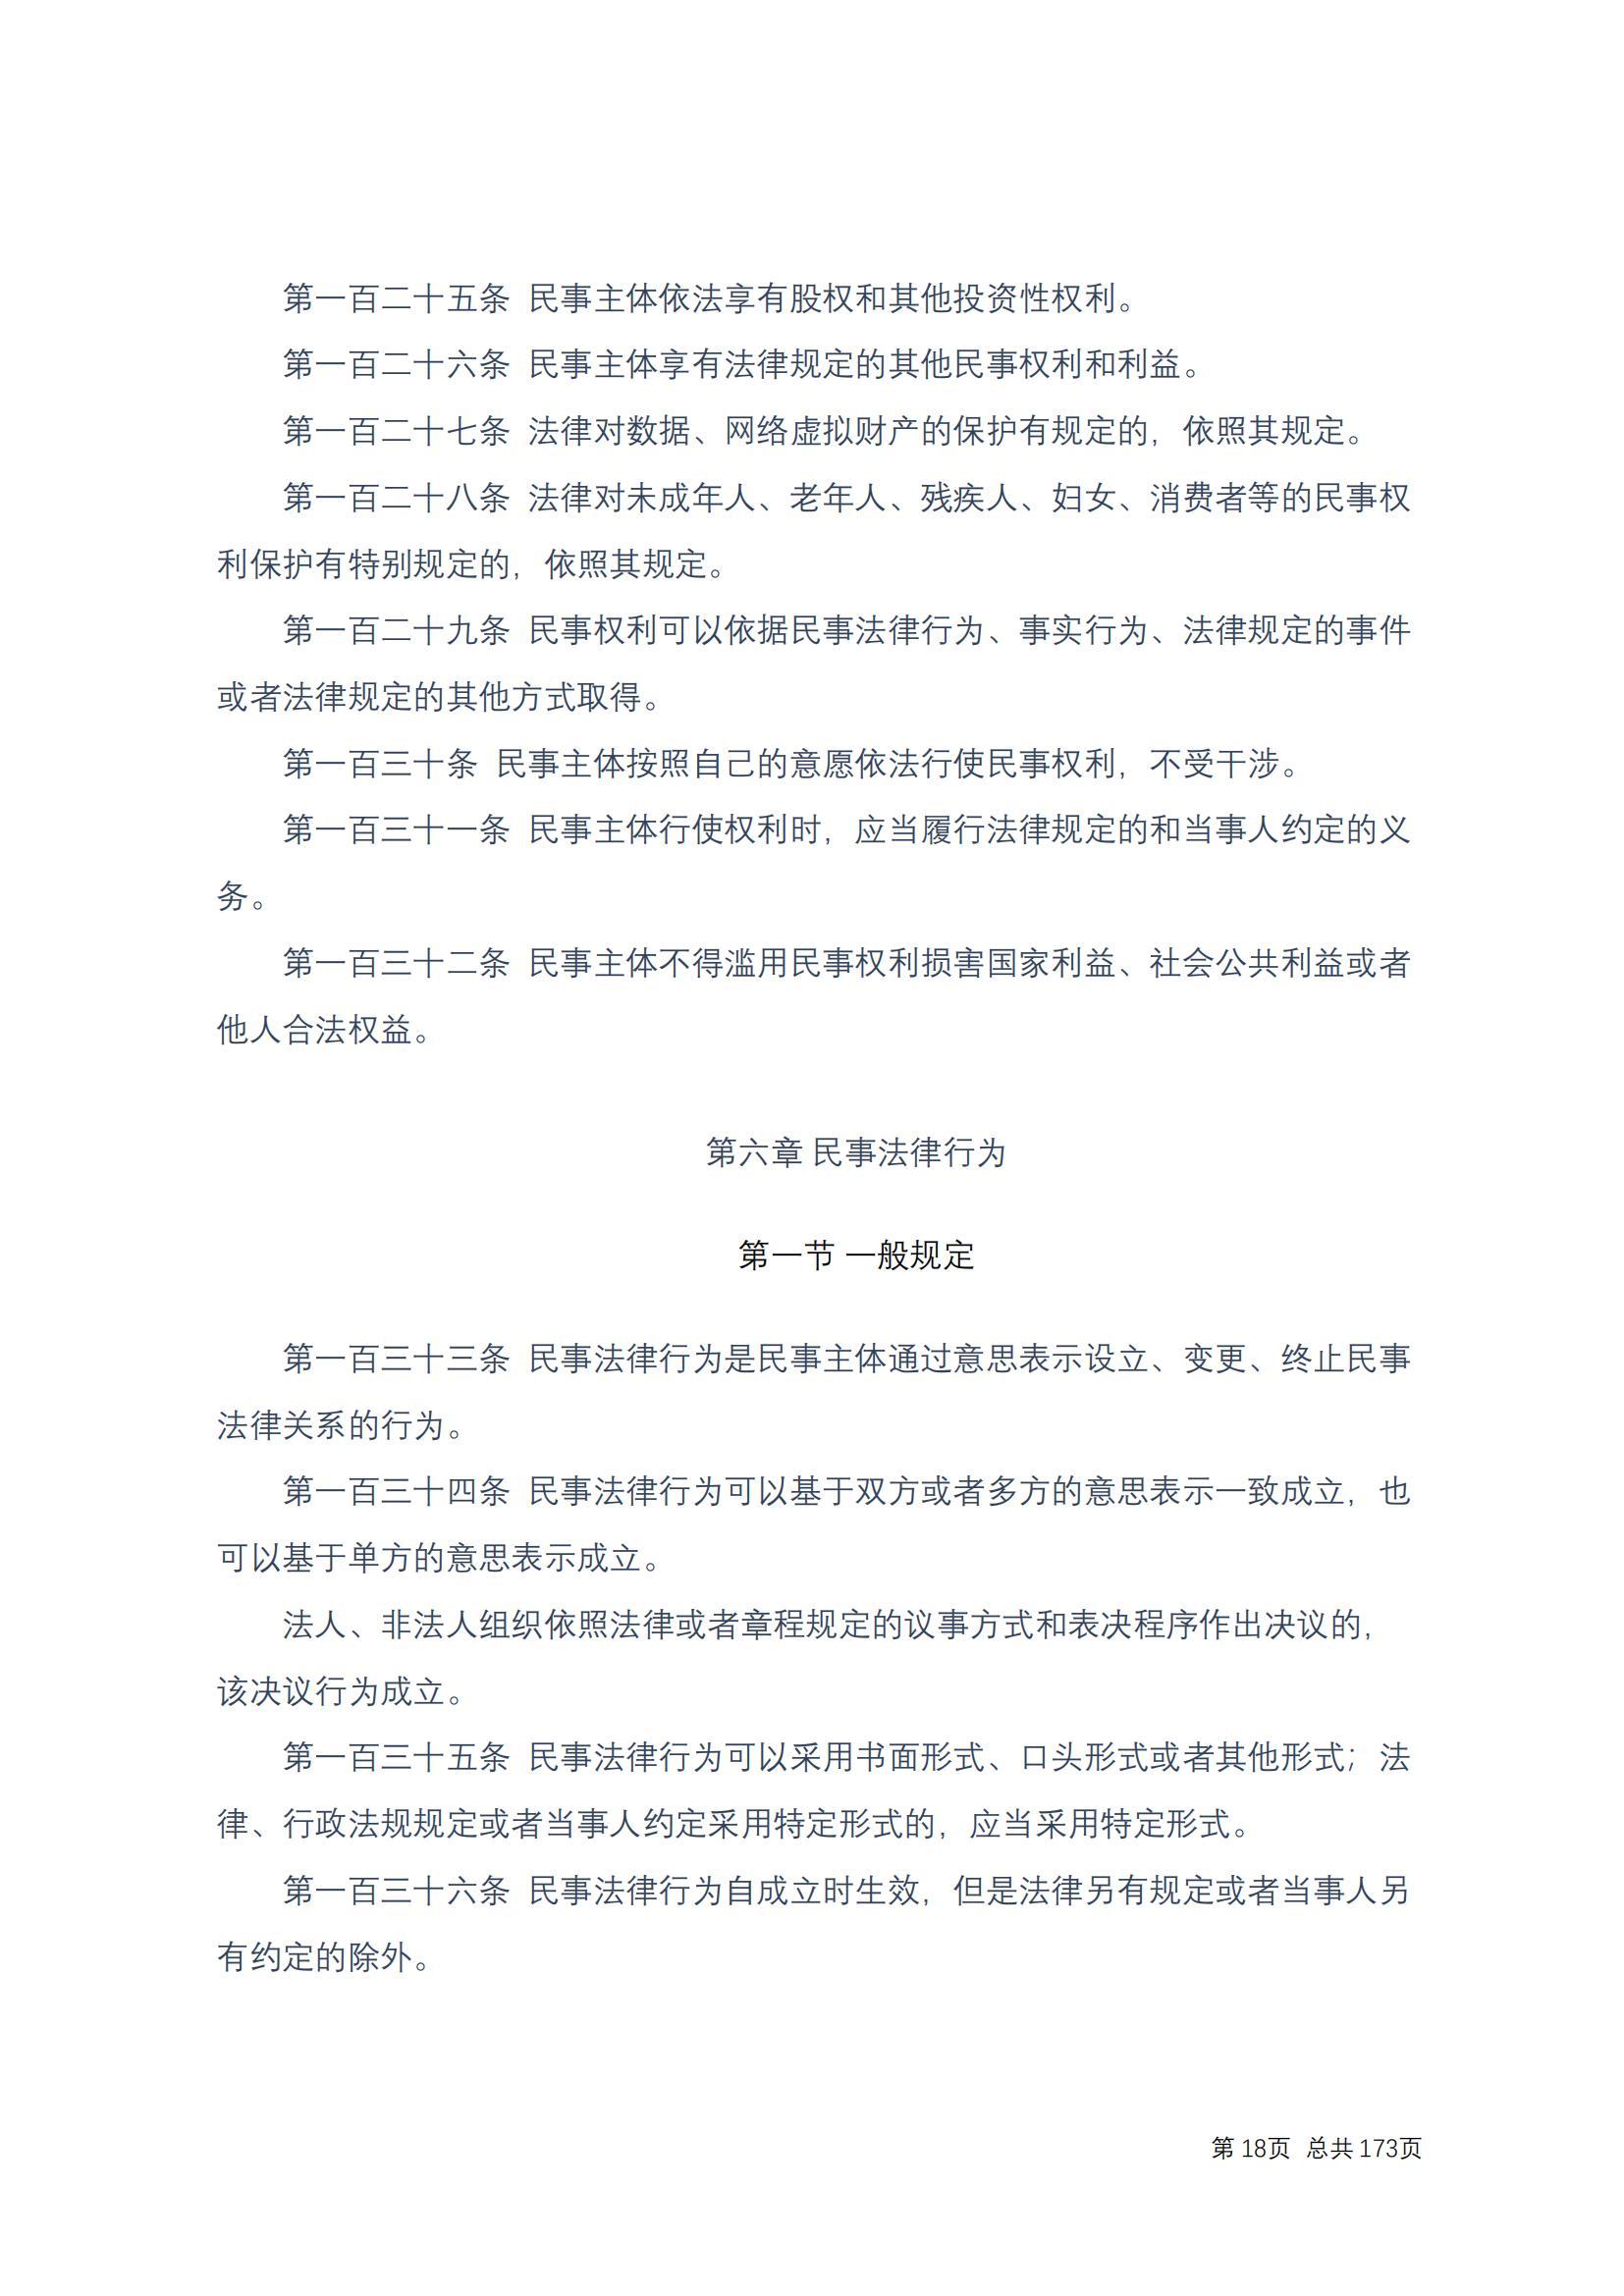 中华人民共和国民法典 修改过_17